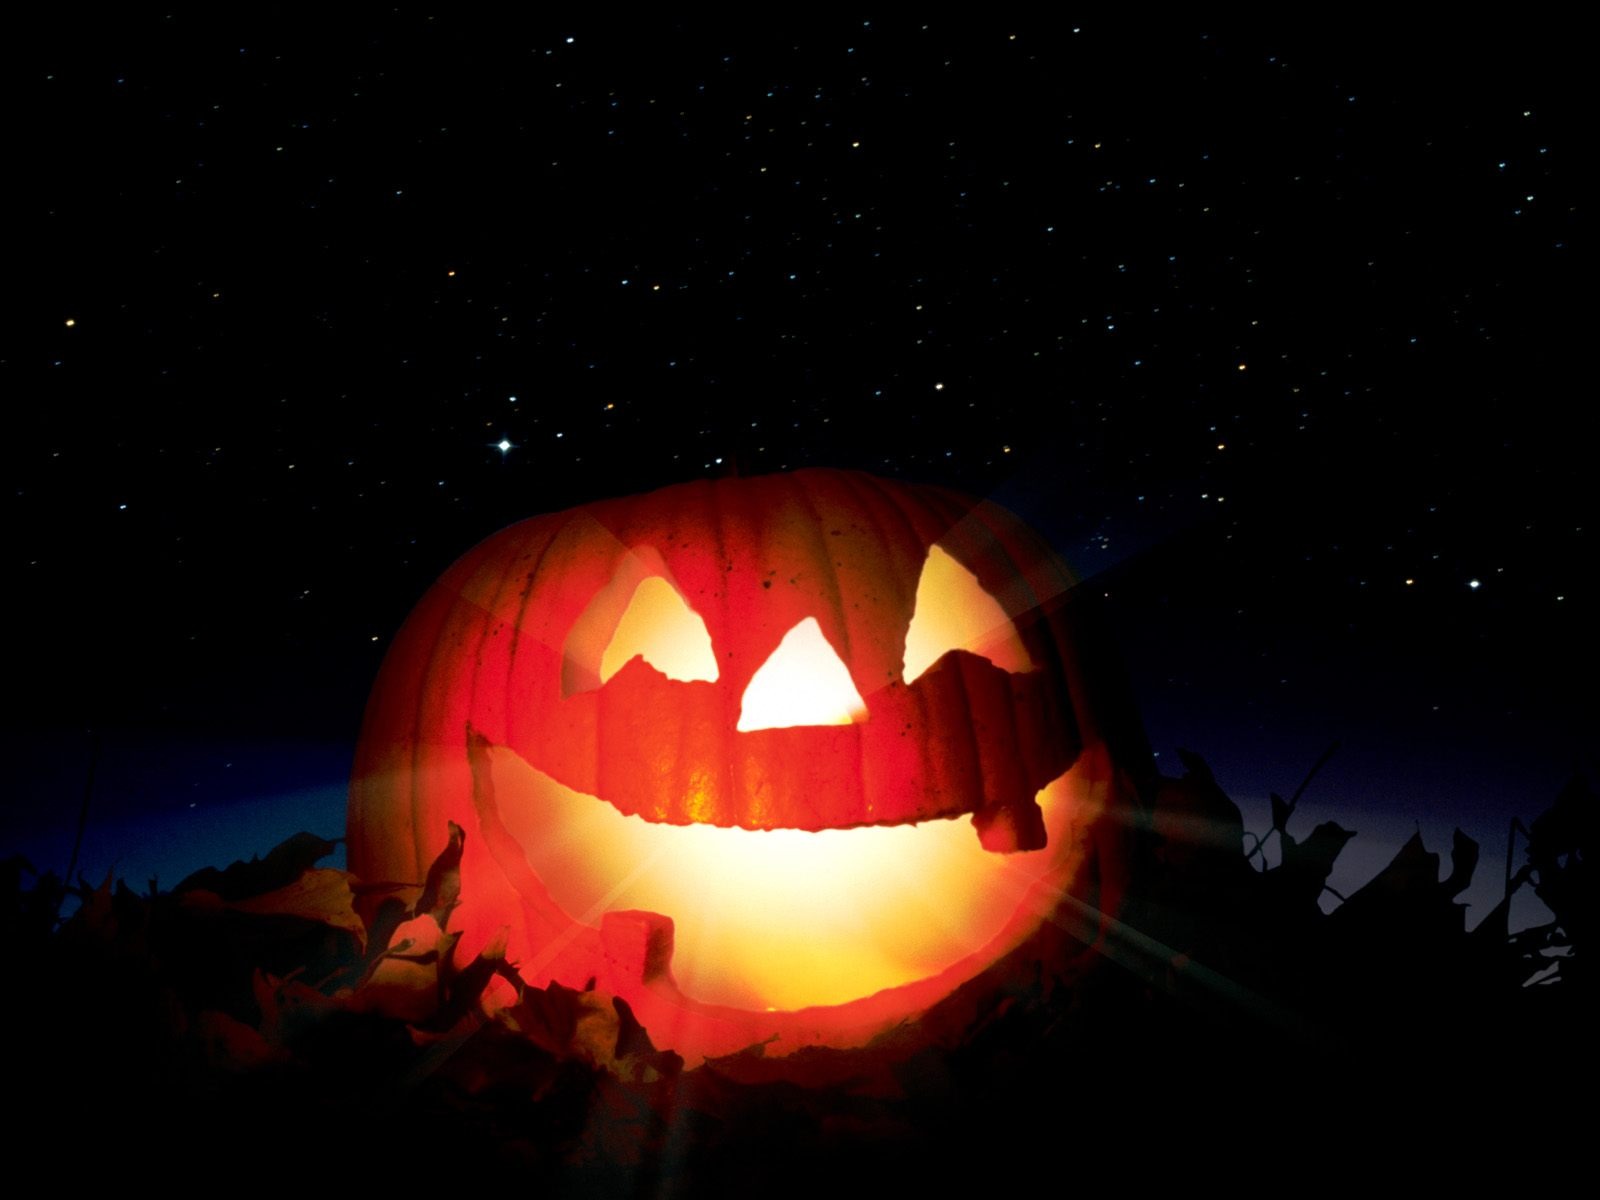 Fondos de Halloween temáticos (1) #10 - 1600x1200